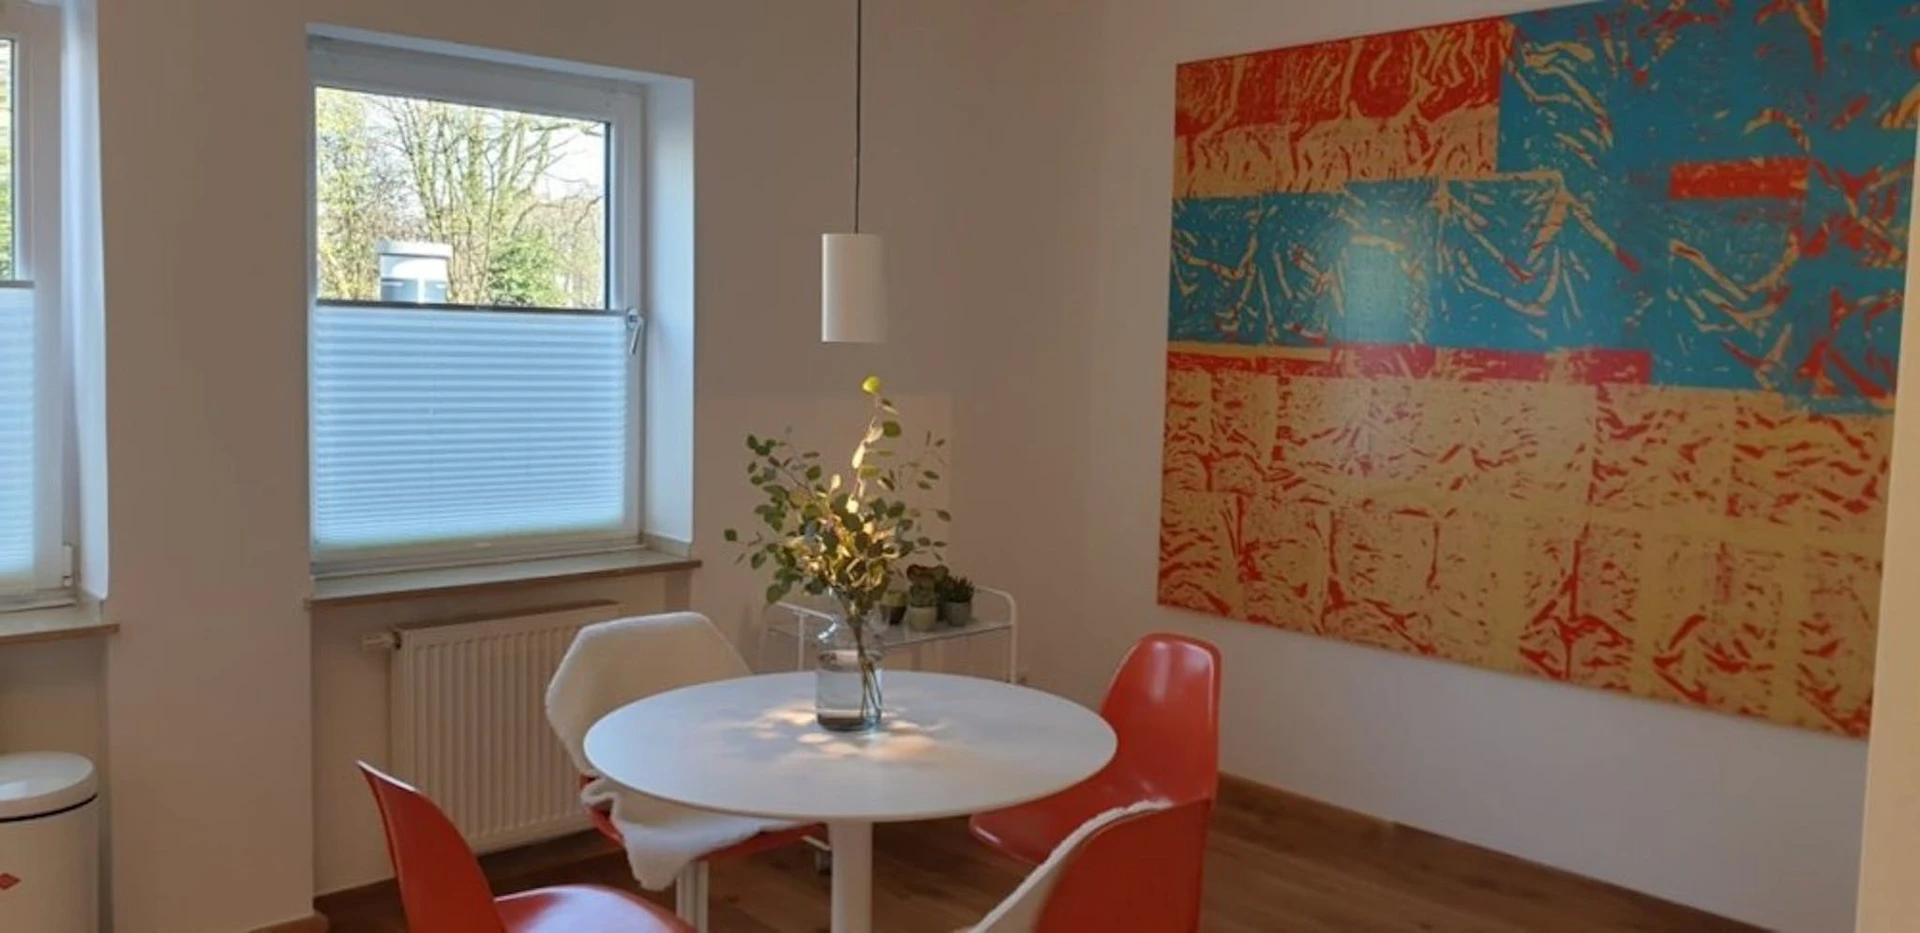 W pełni umeblowane mieszkanie w Düsseldorf